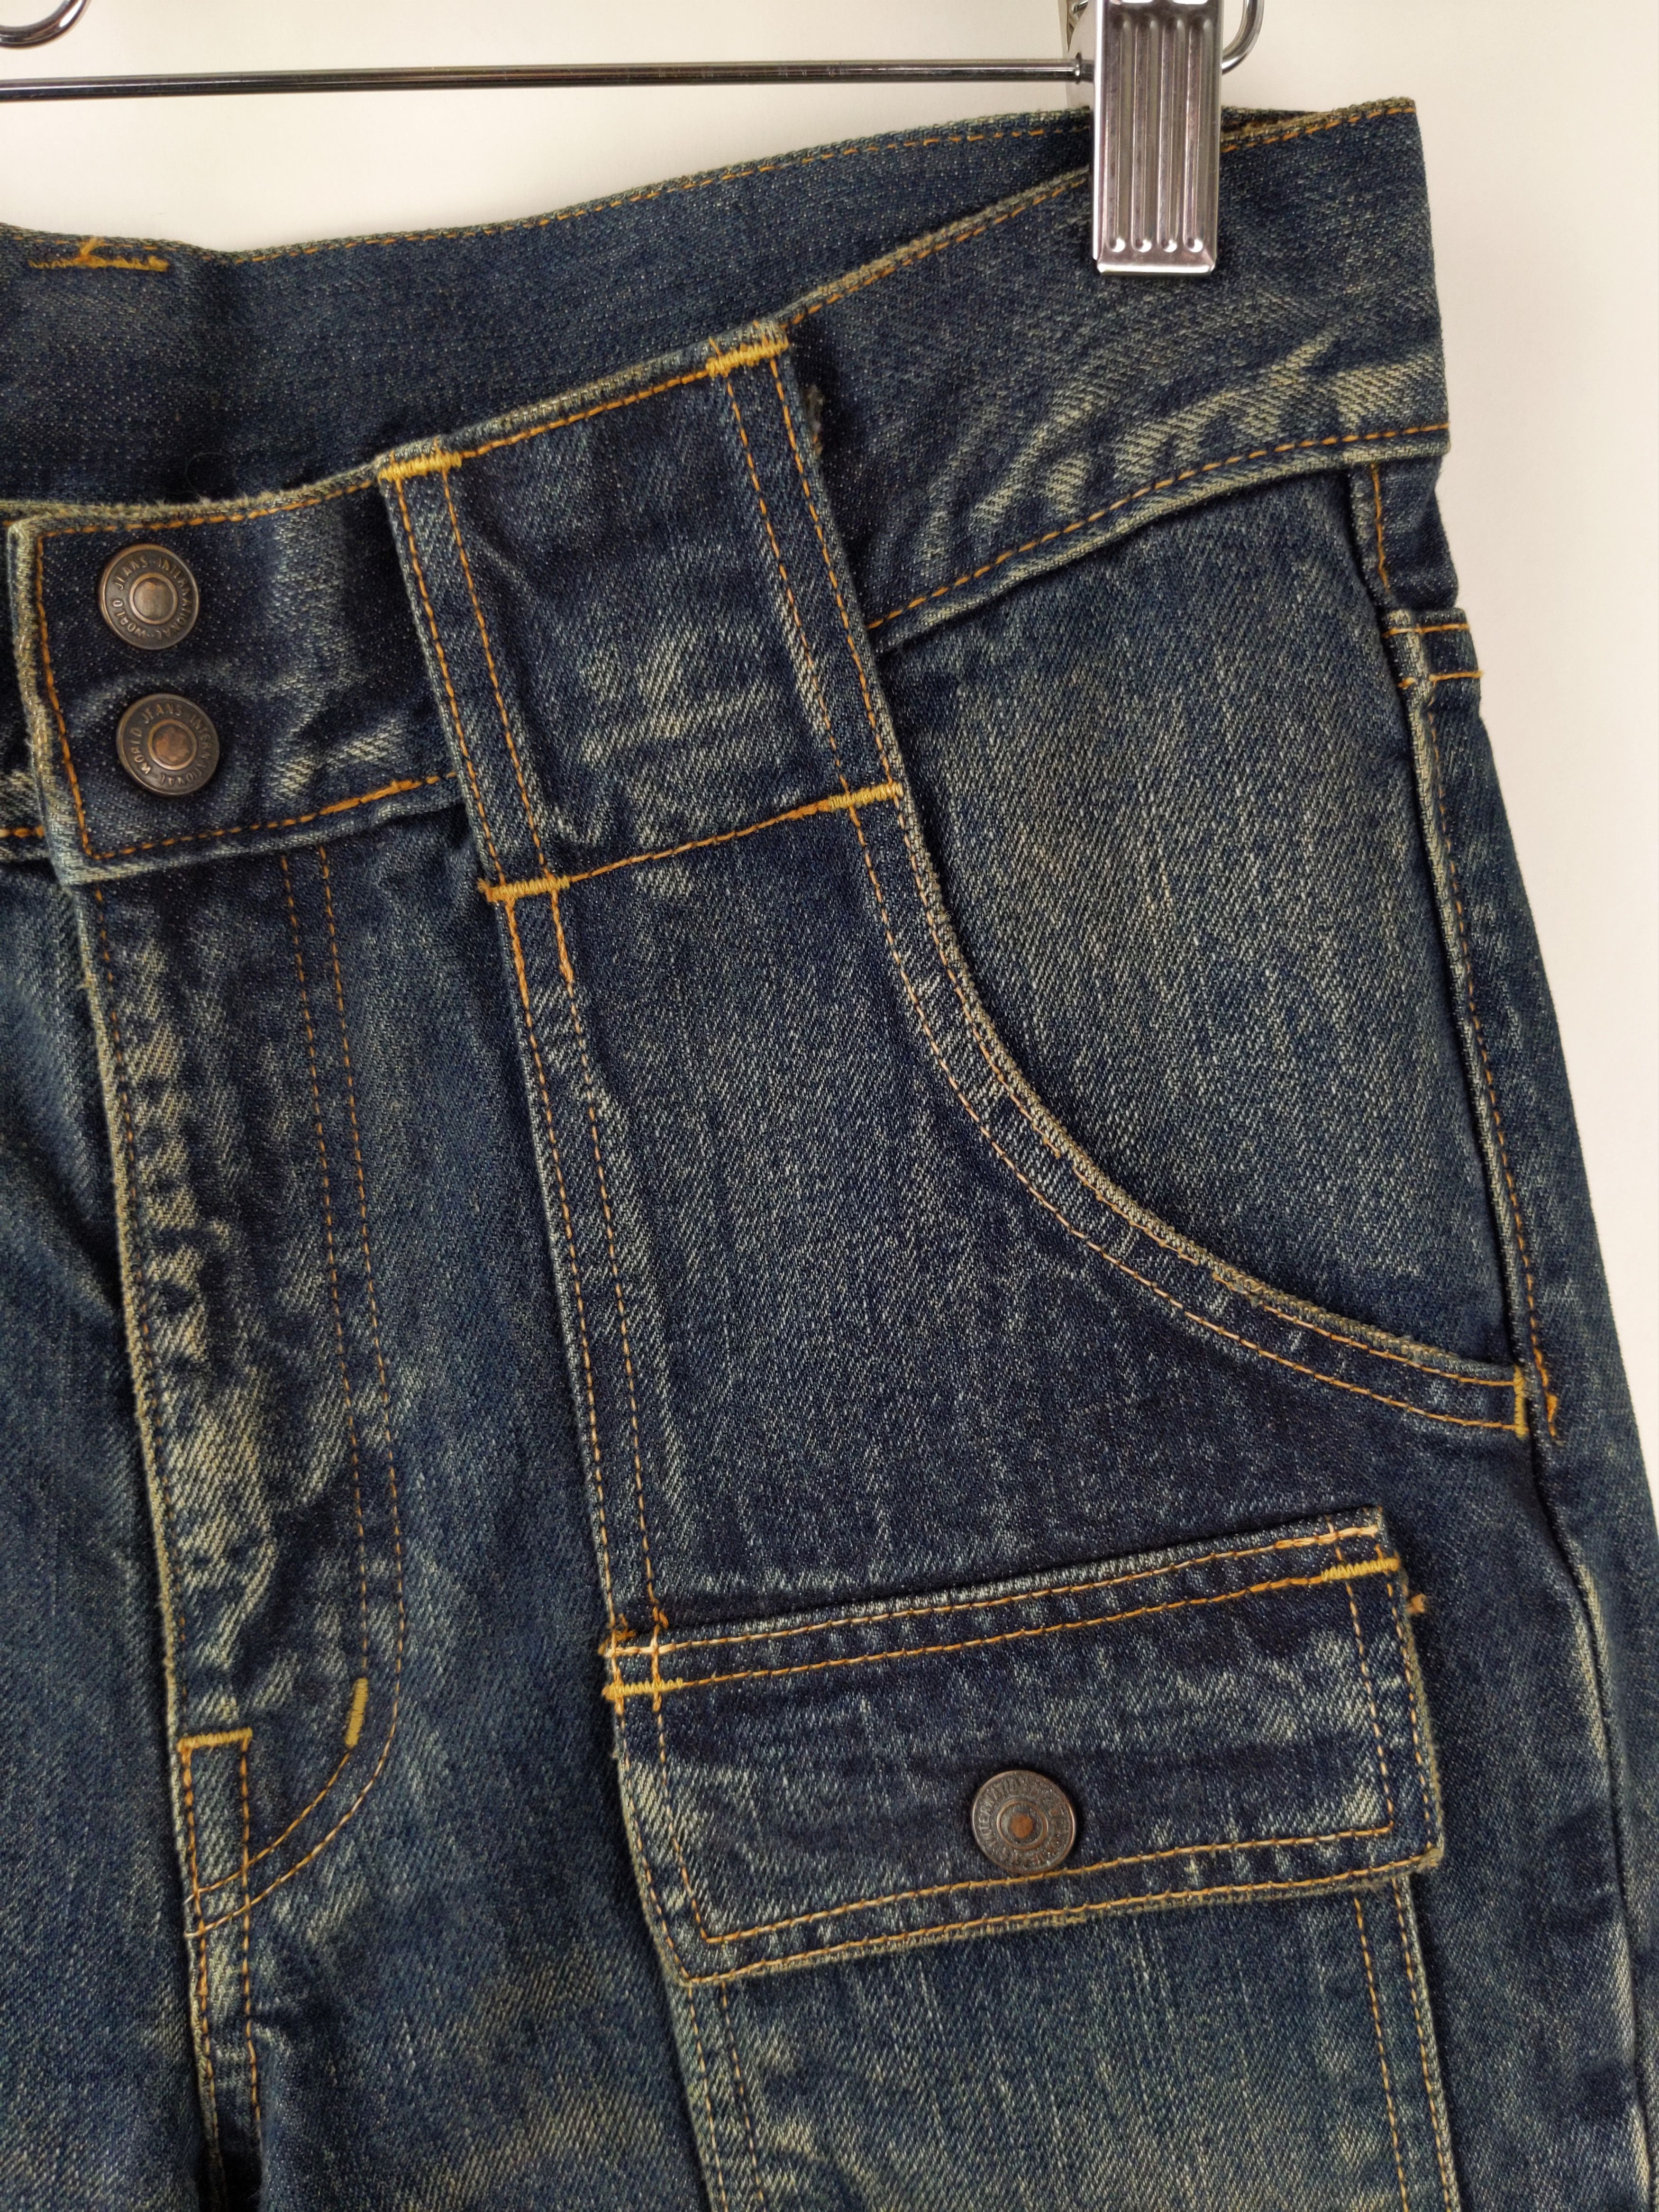 Kapital KAPITAL KOUNTRY Sashiko Boro Bush Pants Jeans Denim US S Size US 29 - 3 Thumbnail